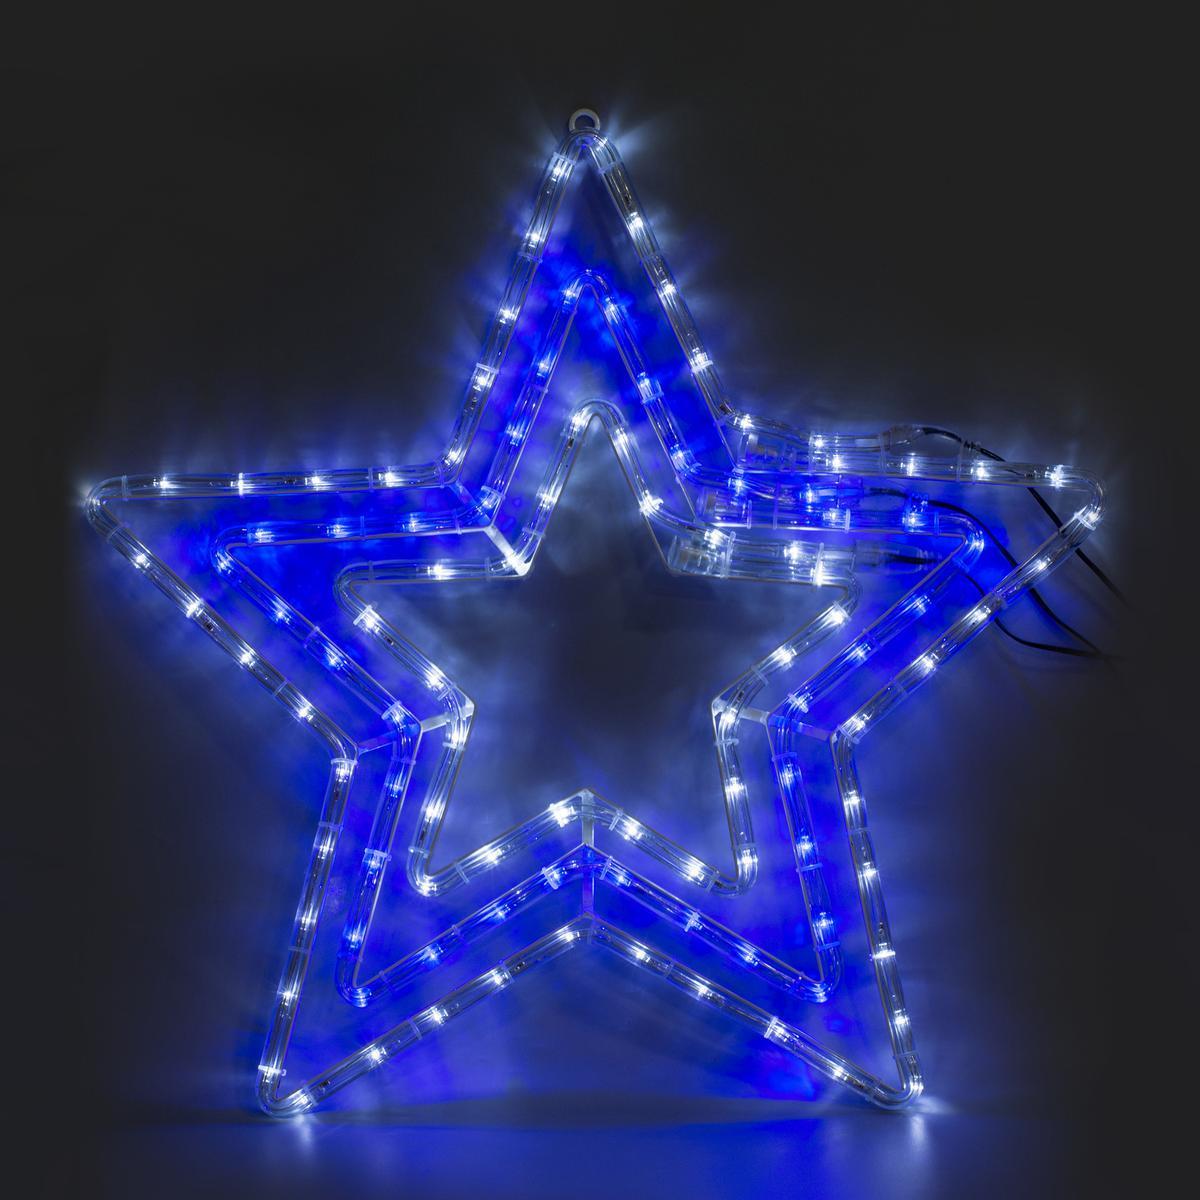 Silhouette électrique 3 étoiles 108 led - Blanc, bleu